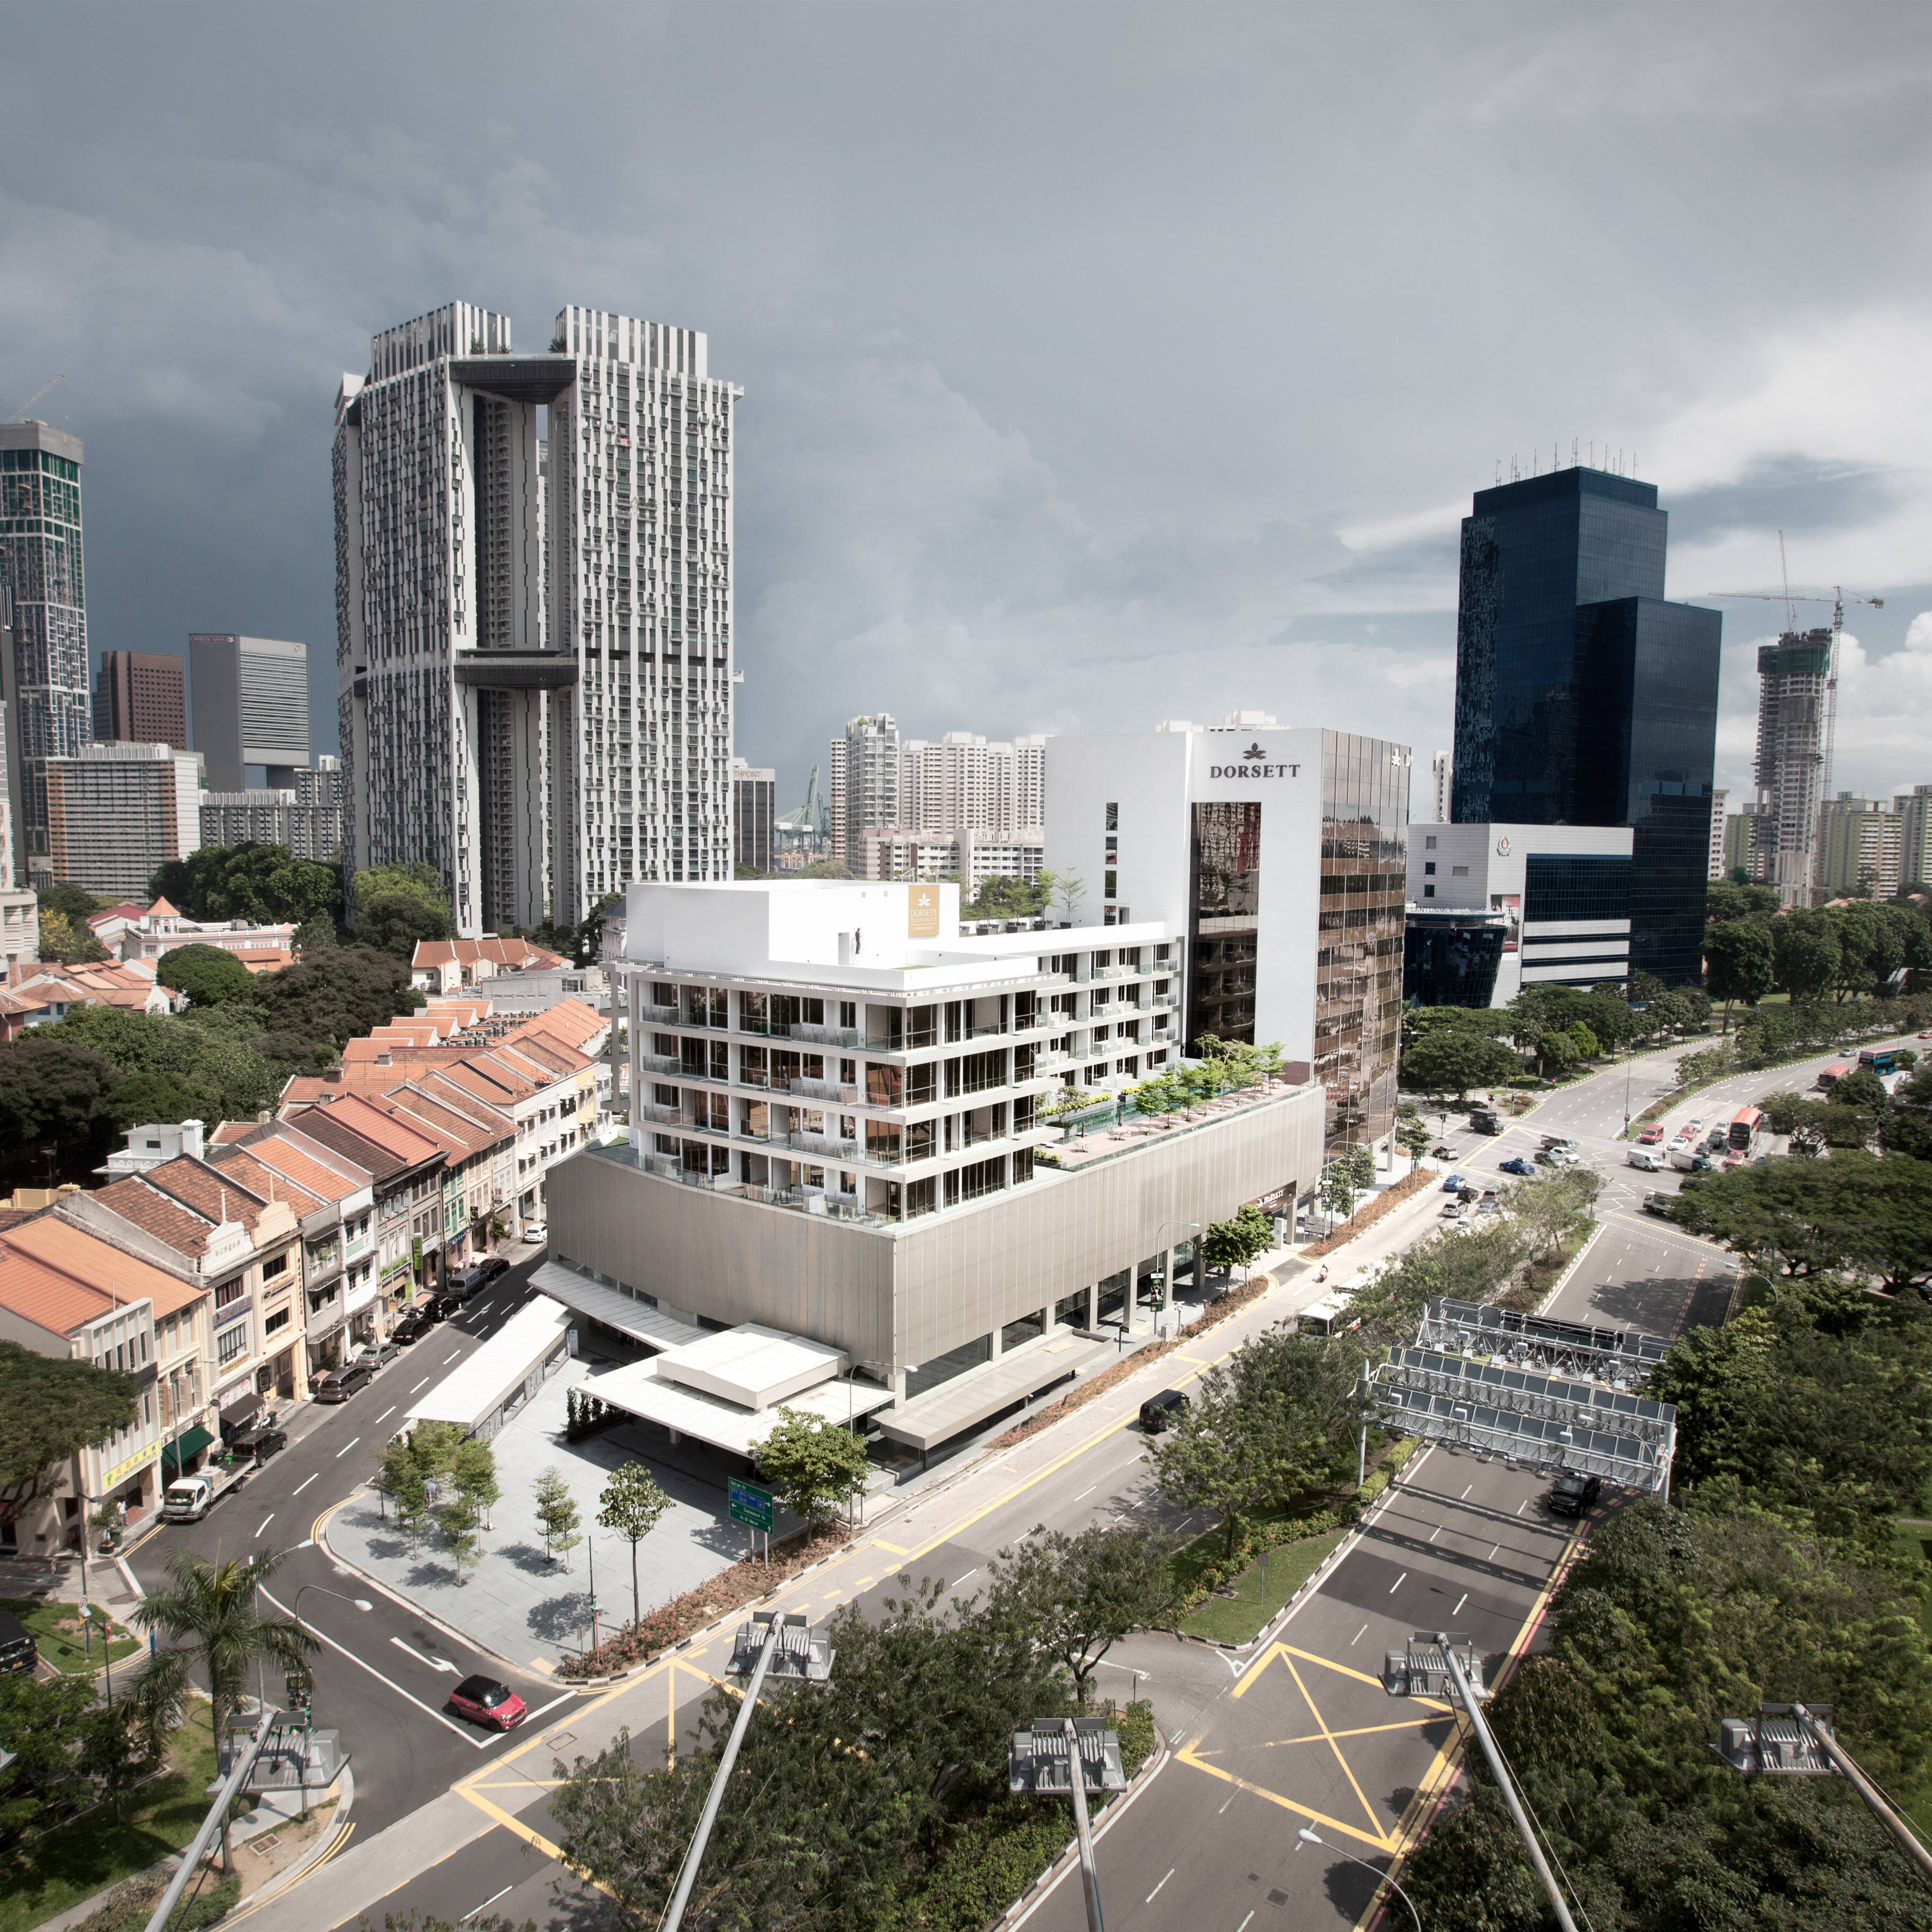 新加坡帝盛酒店: 传统与现代于此邂逅